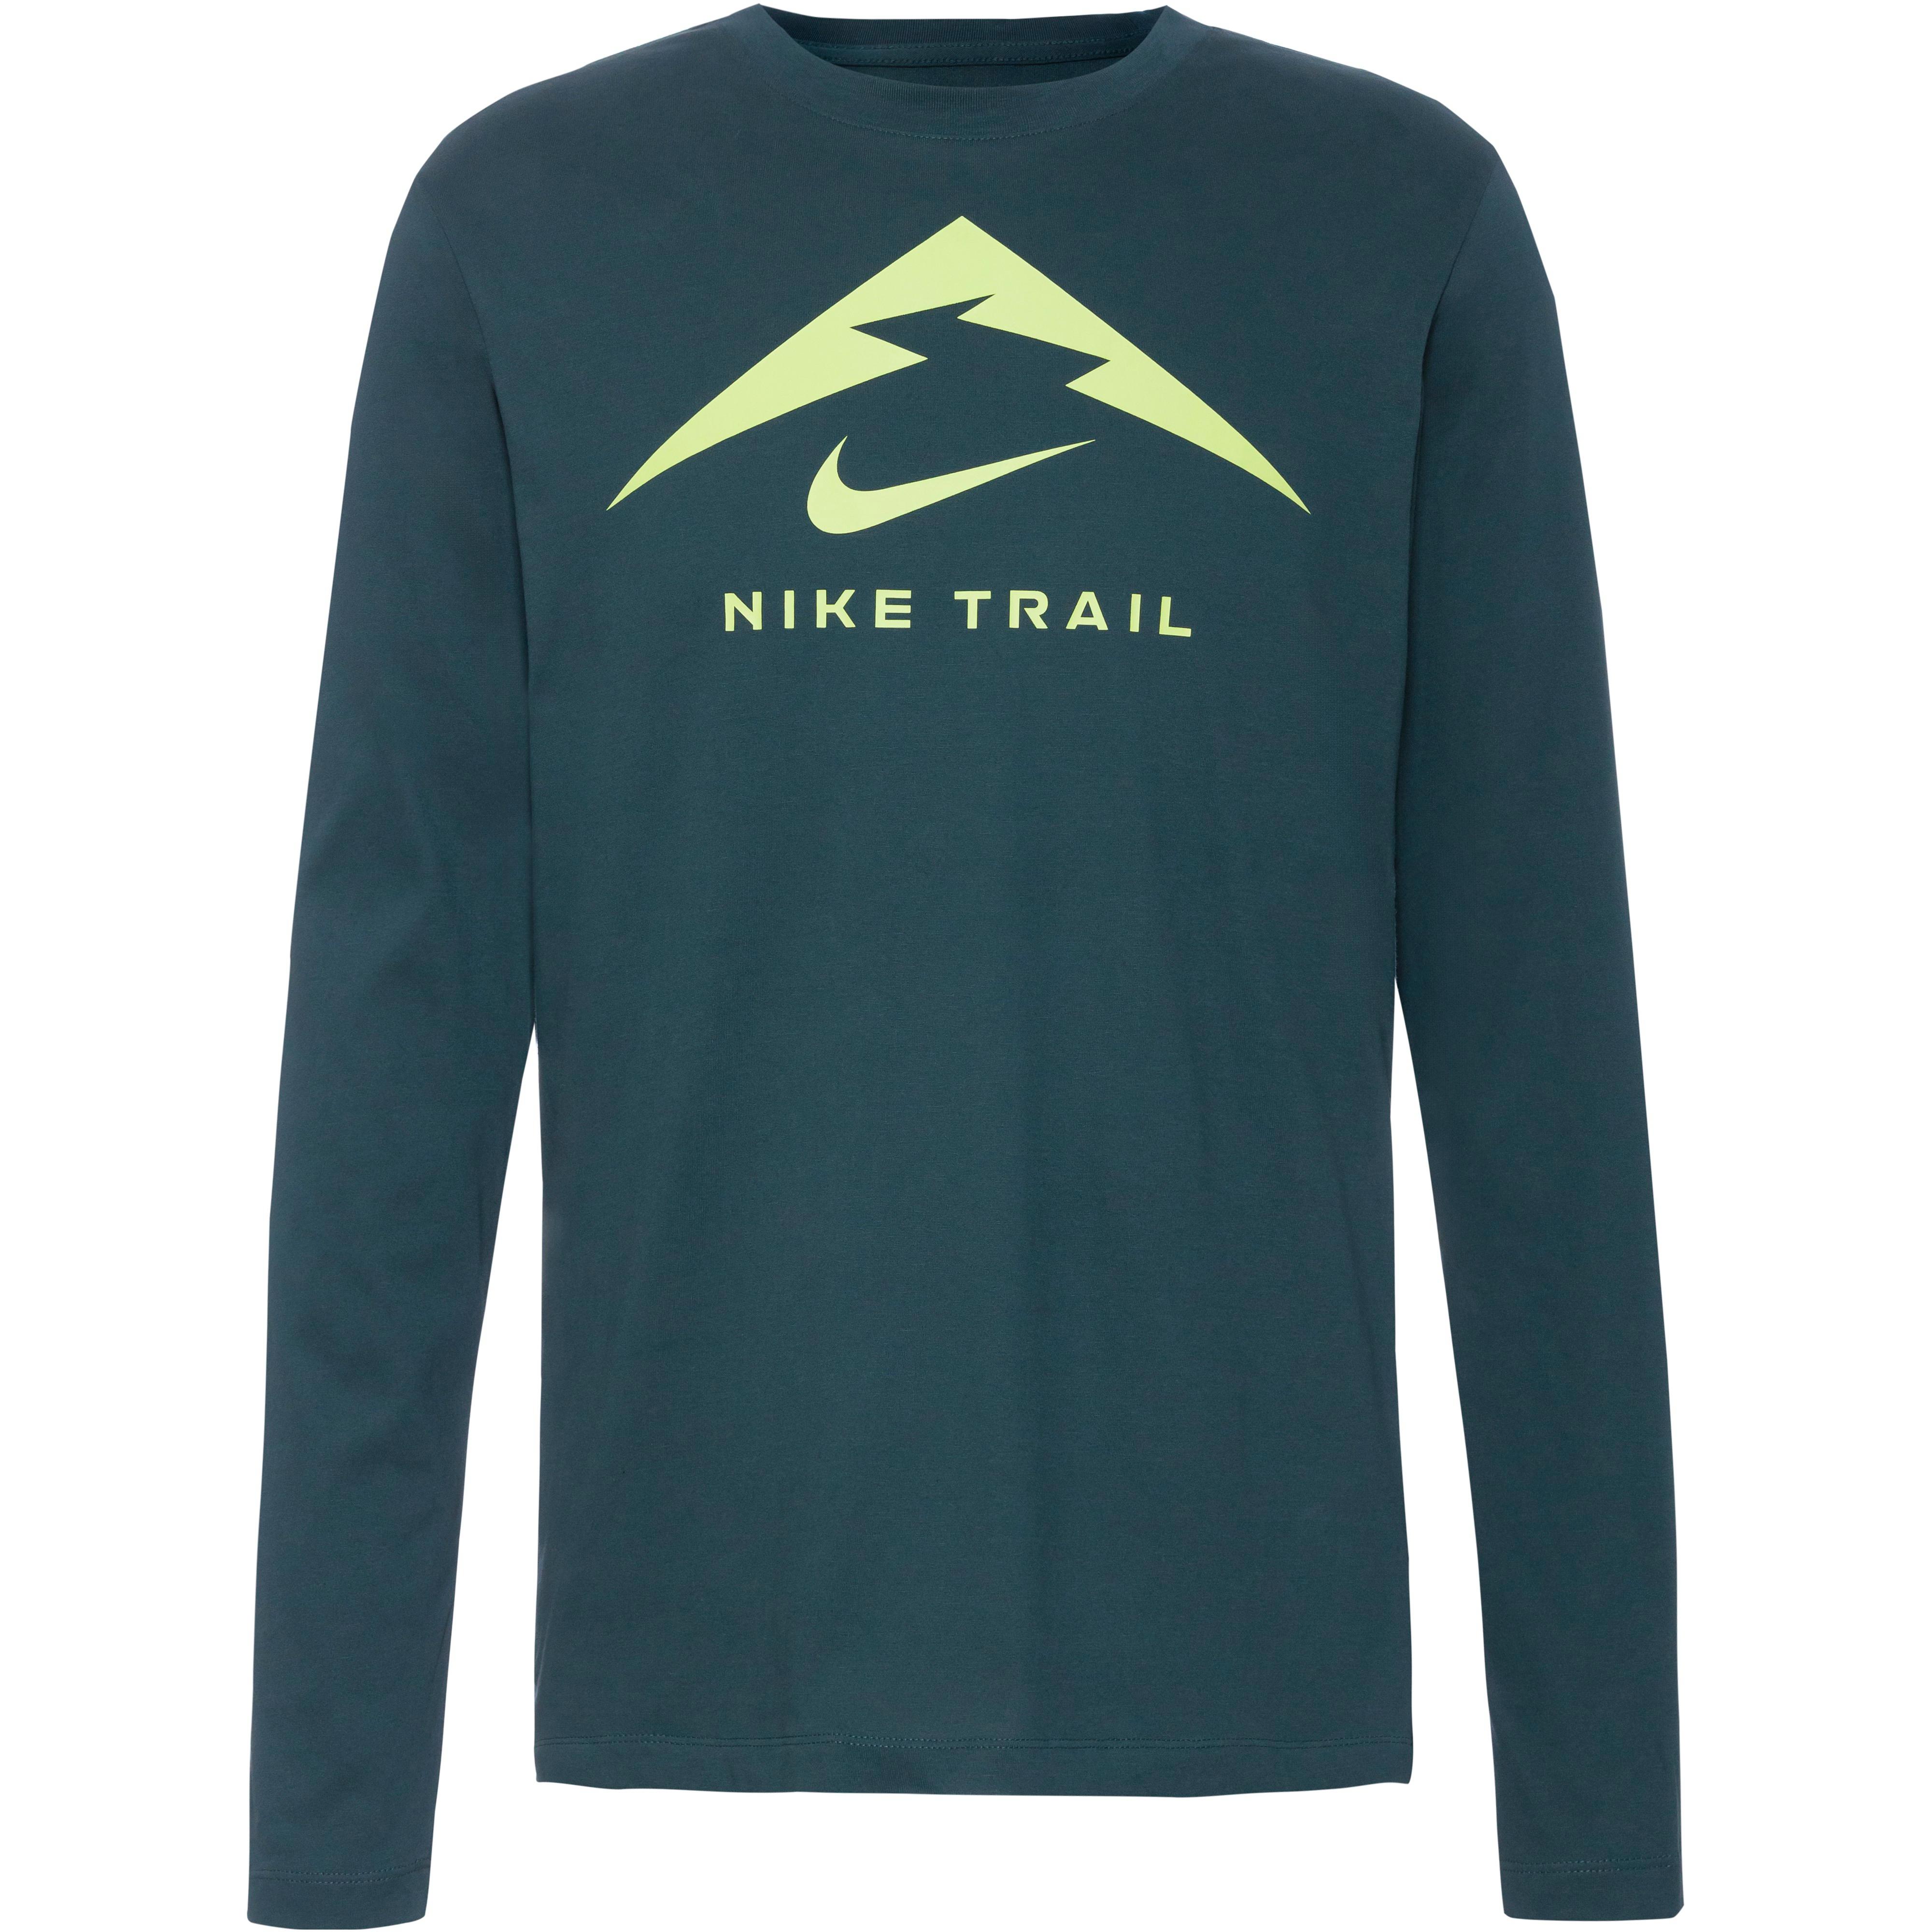 bei Nike bequem SportScheck Shirts bestellen online